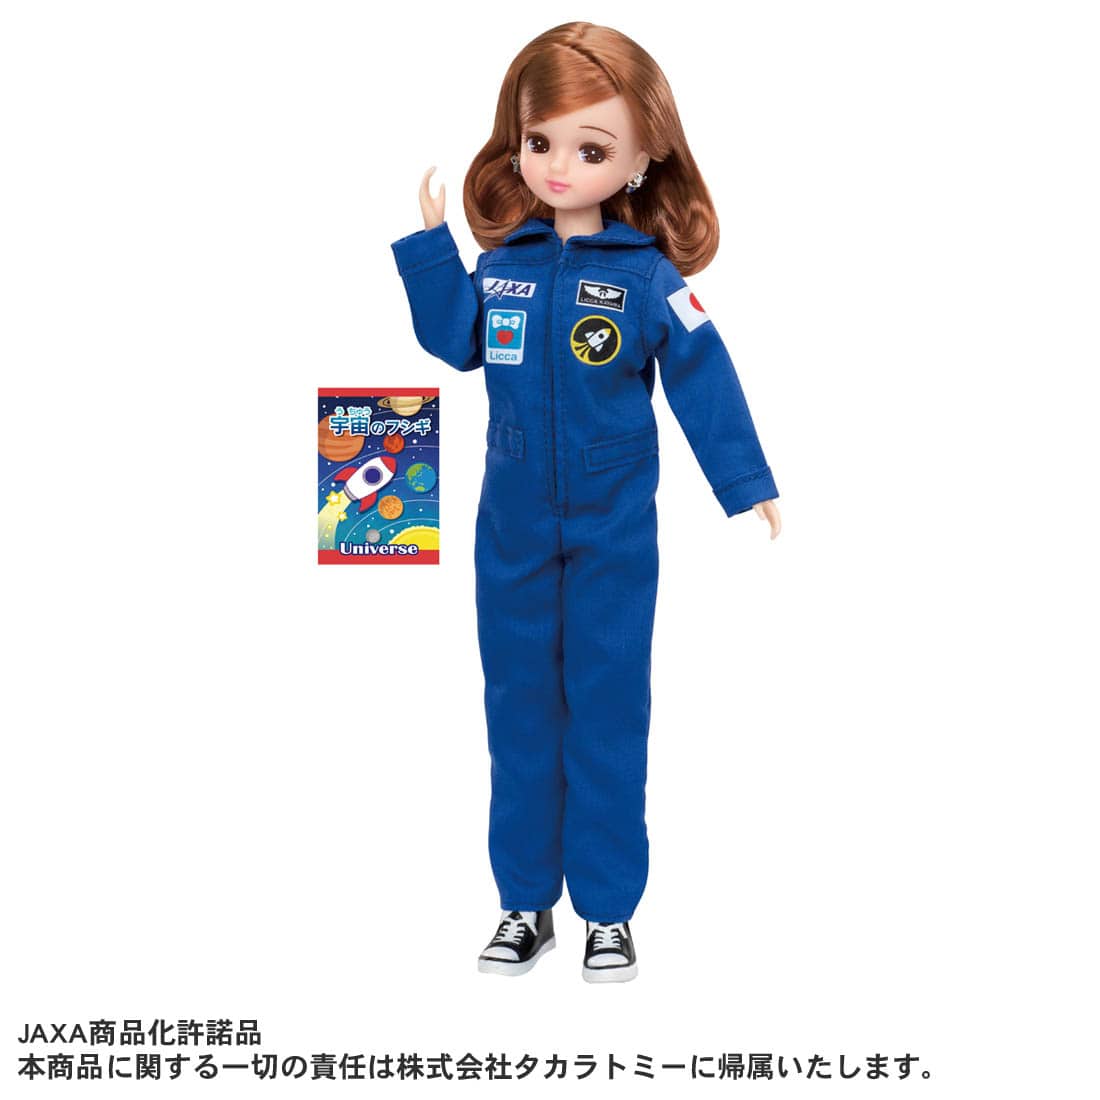 リカちゃん人形『あこがれの宇宙飛行士 リカちゃん』完成品ドール-001